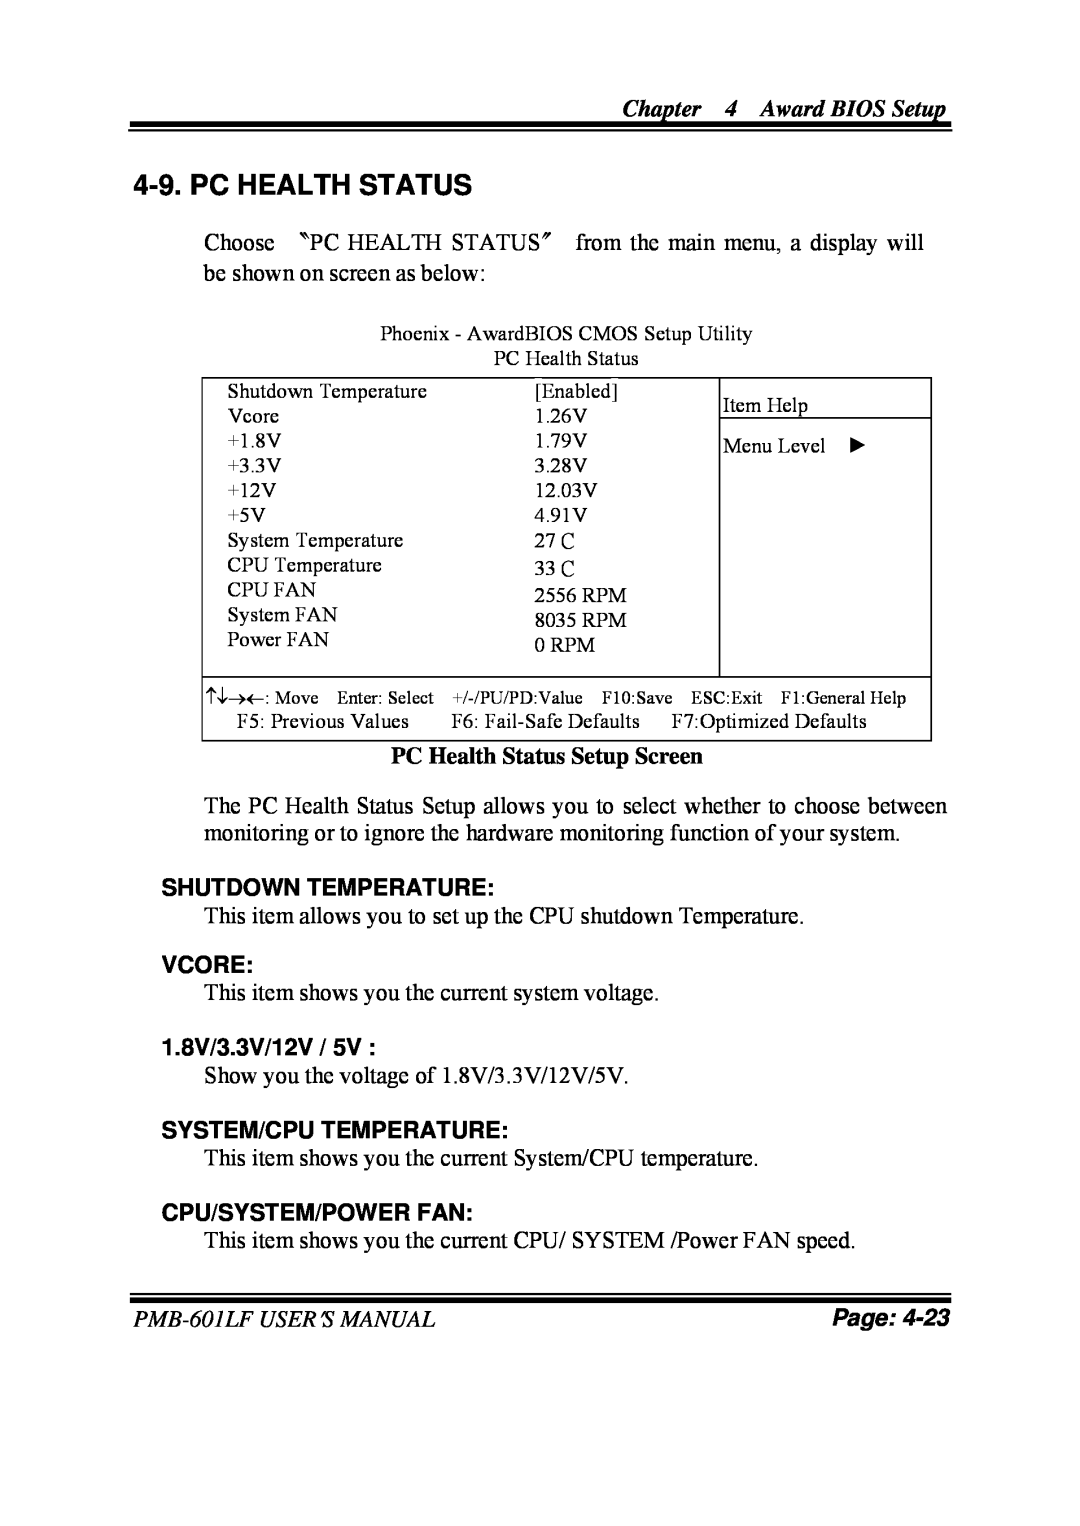 Intel PMB-601LF Pc Health Status, PC Health Status Setup Screen, Shutdown Temperature, Vcore, 1.8V/3.3V/12V, Page 